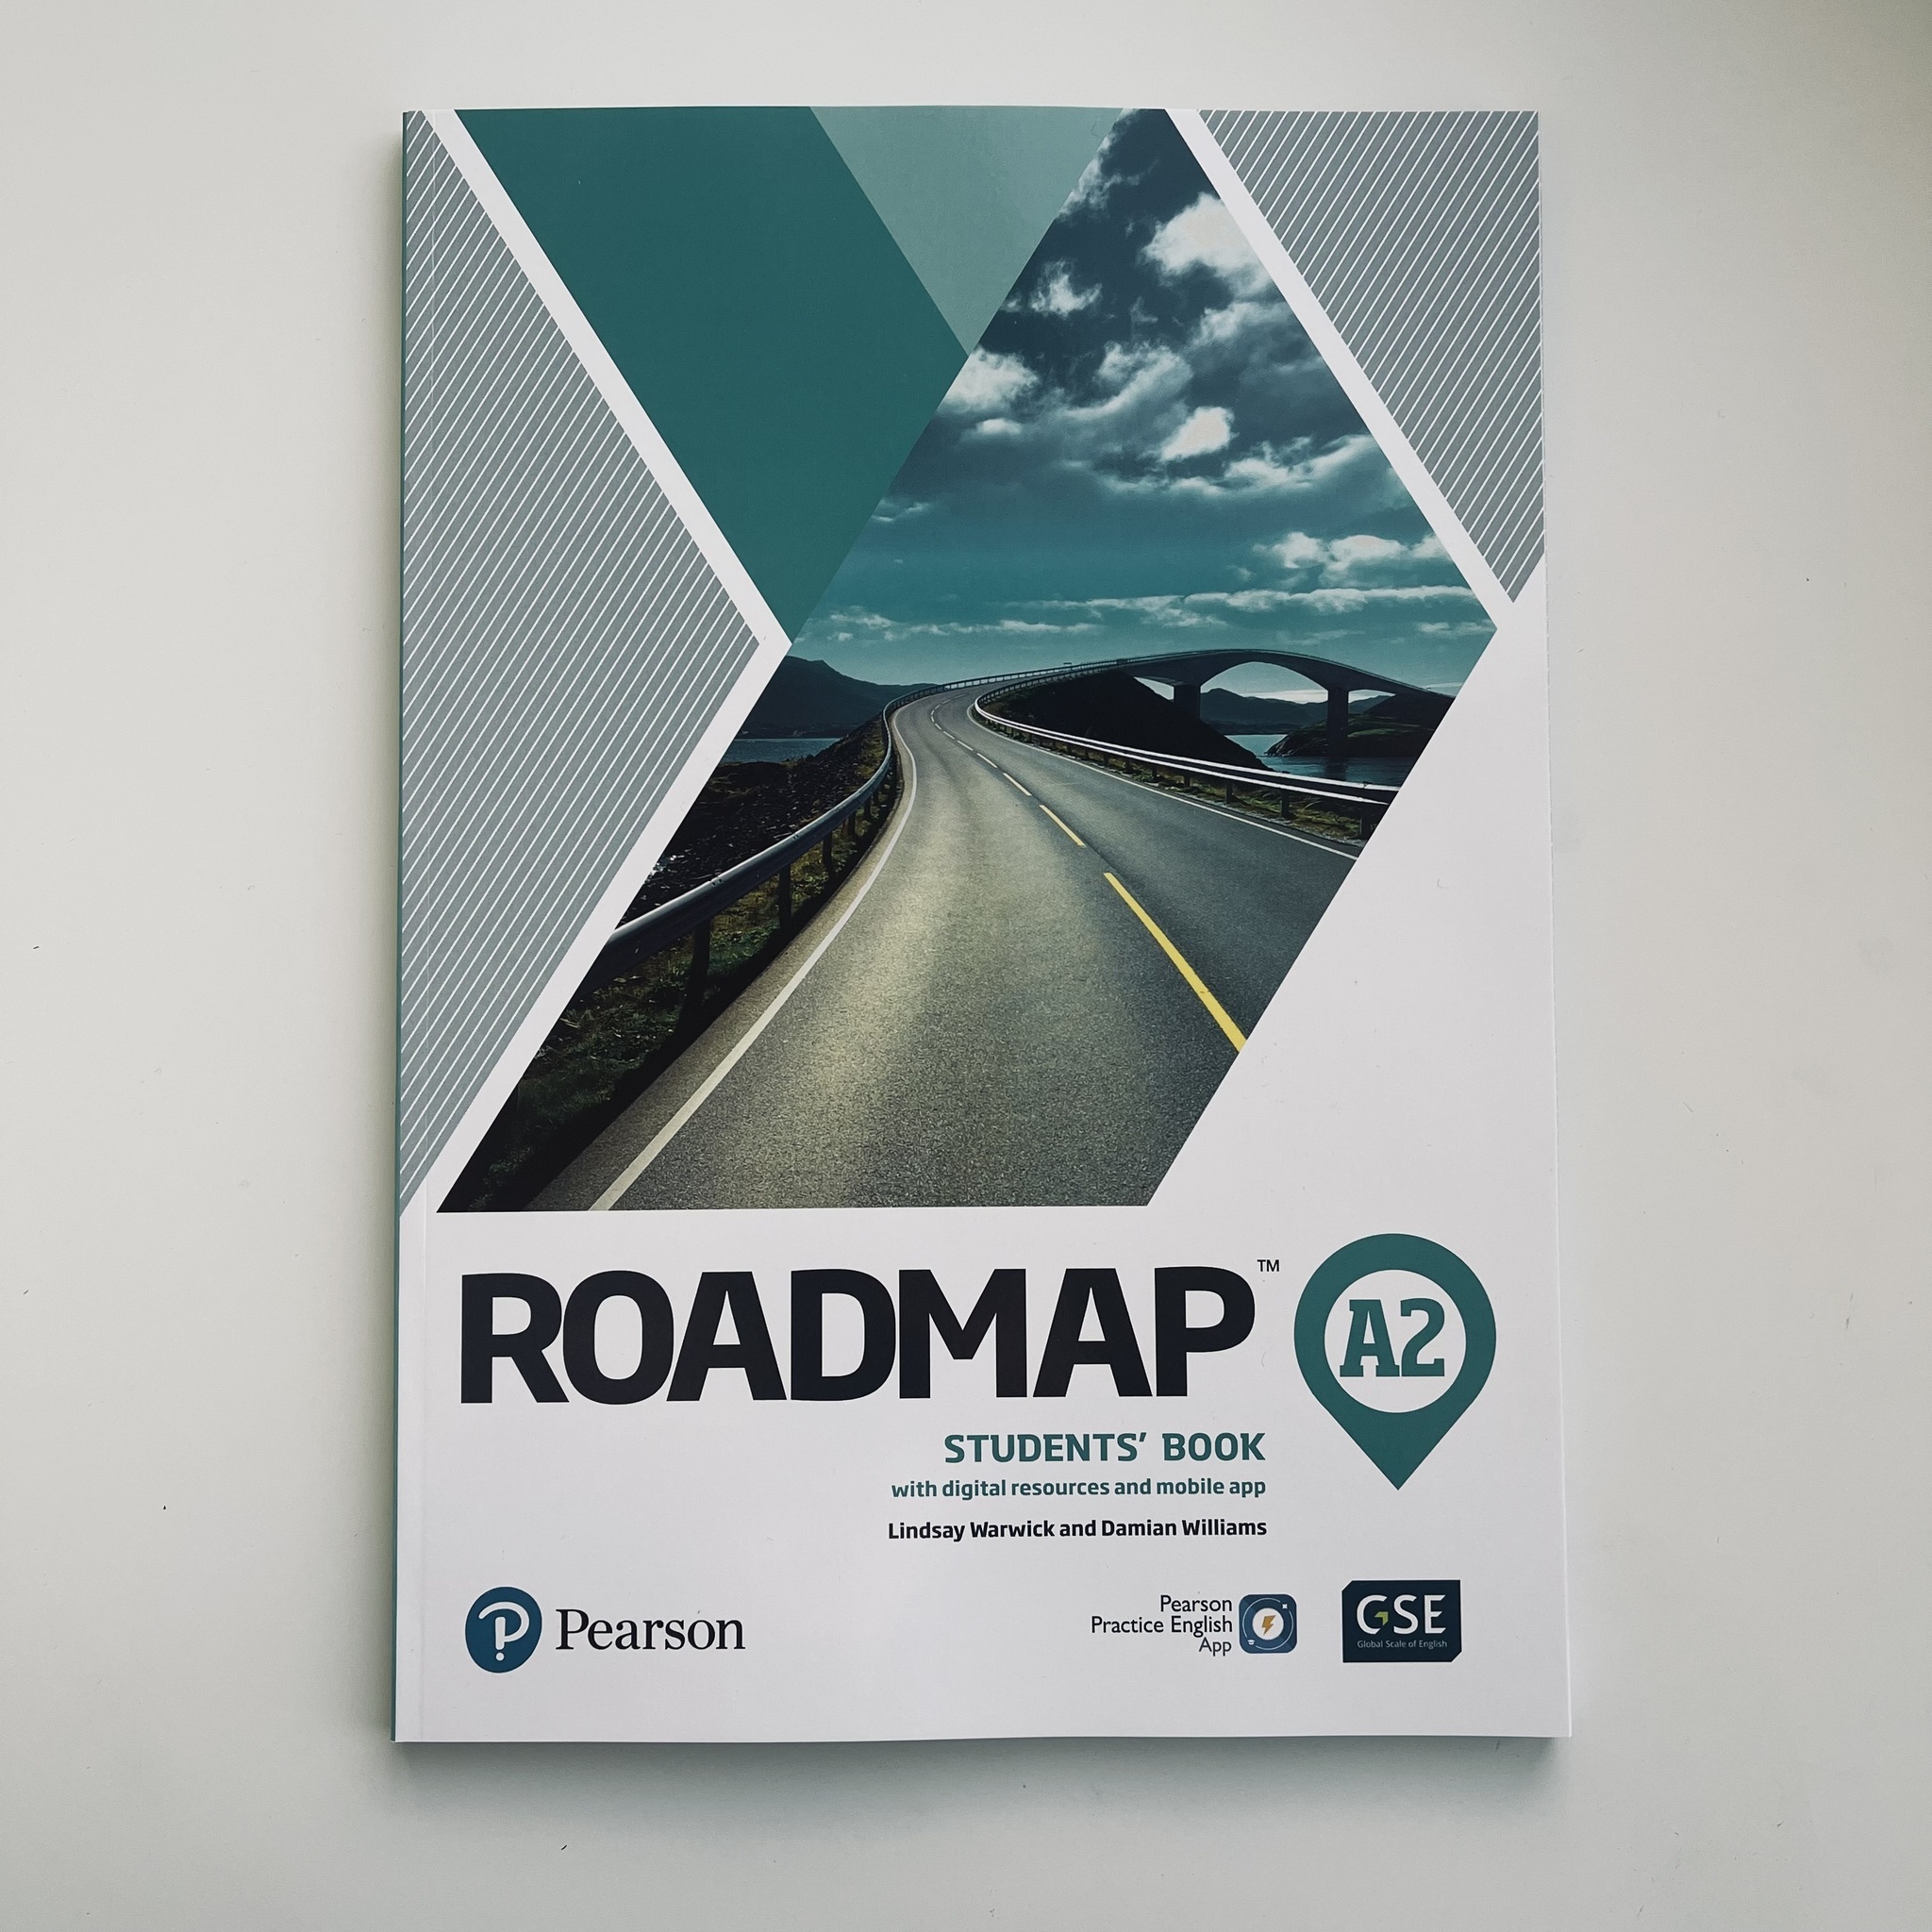 Roadmap student s book. Roadmap b1 student's book обложка. Roadmap учебник. Roadmap a2.